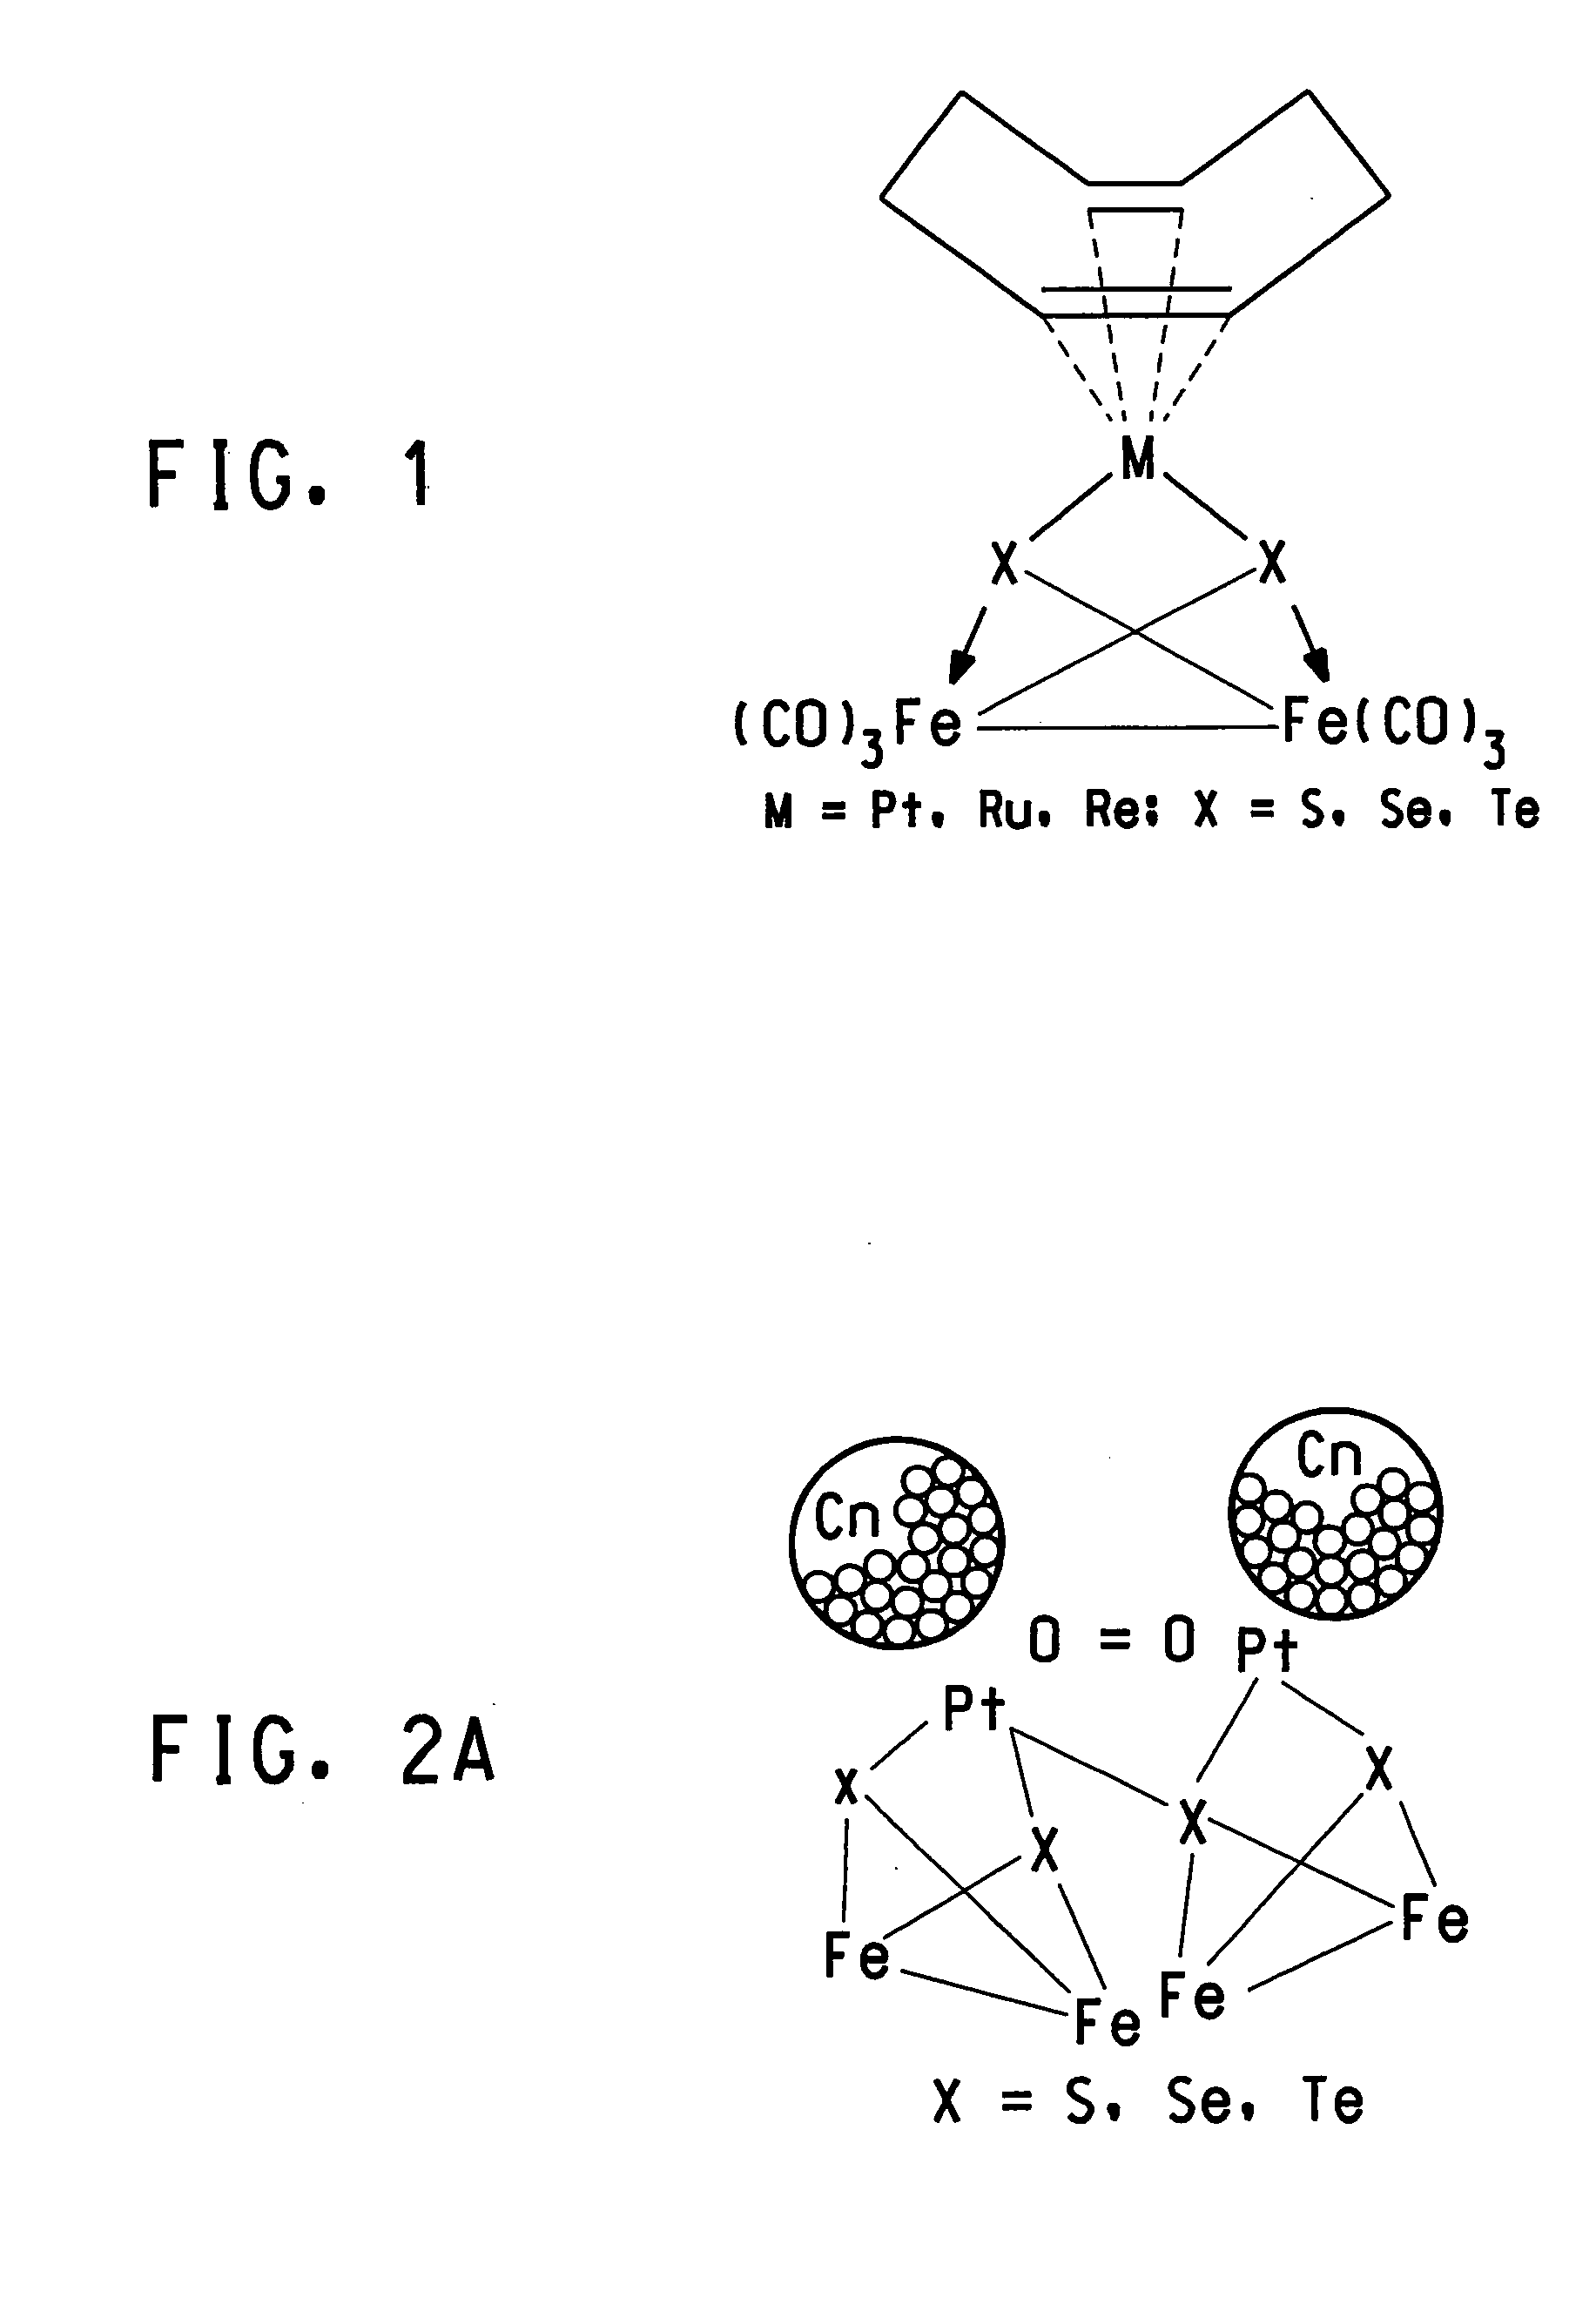 Methanol tolerant catalyst material